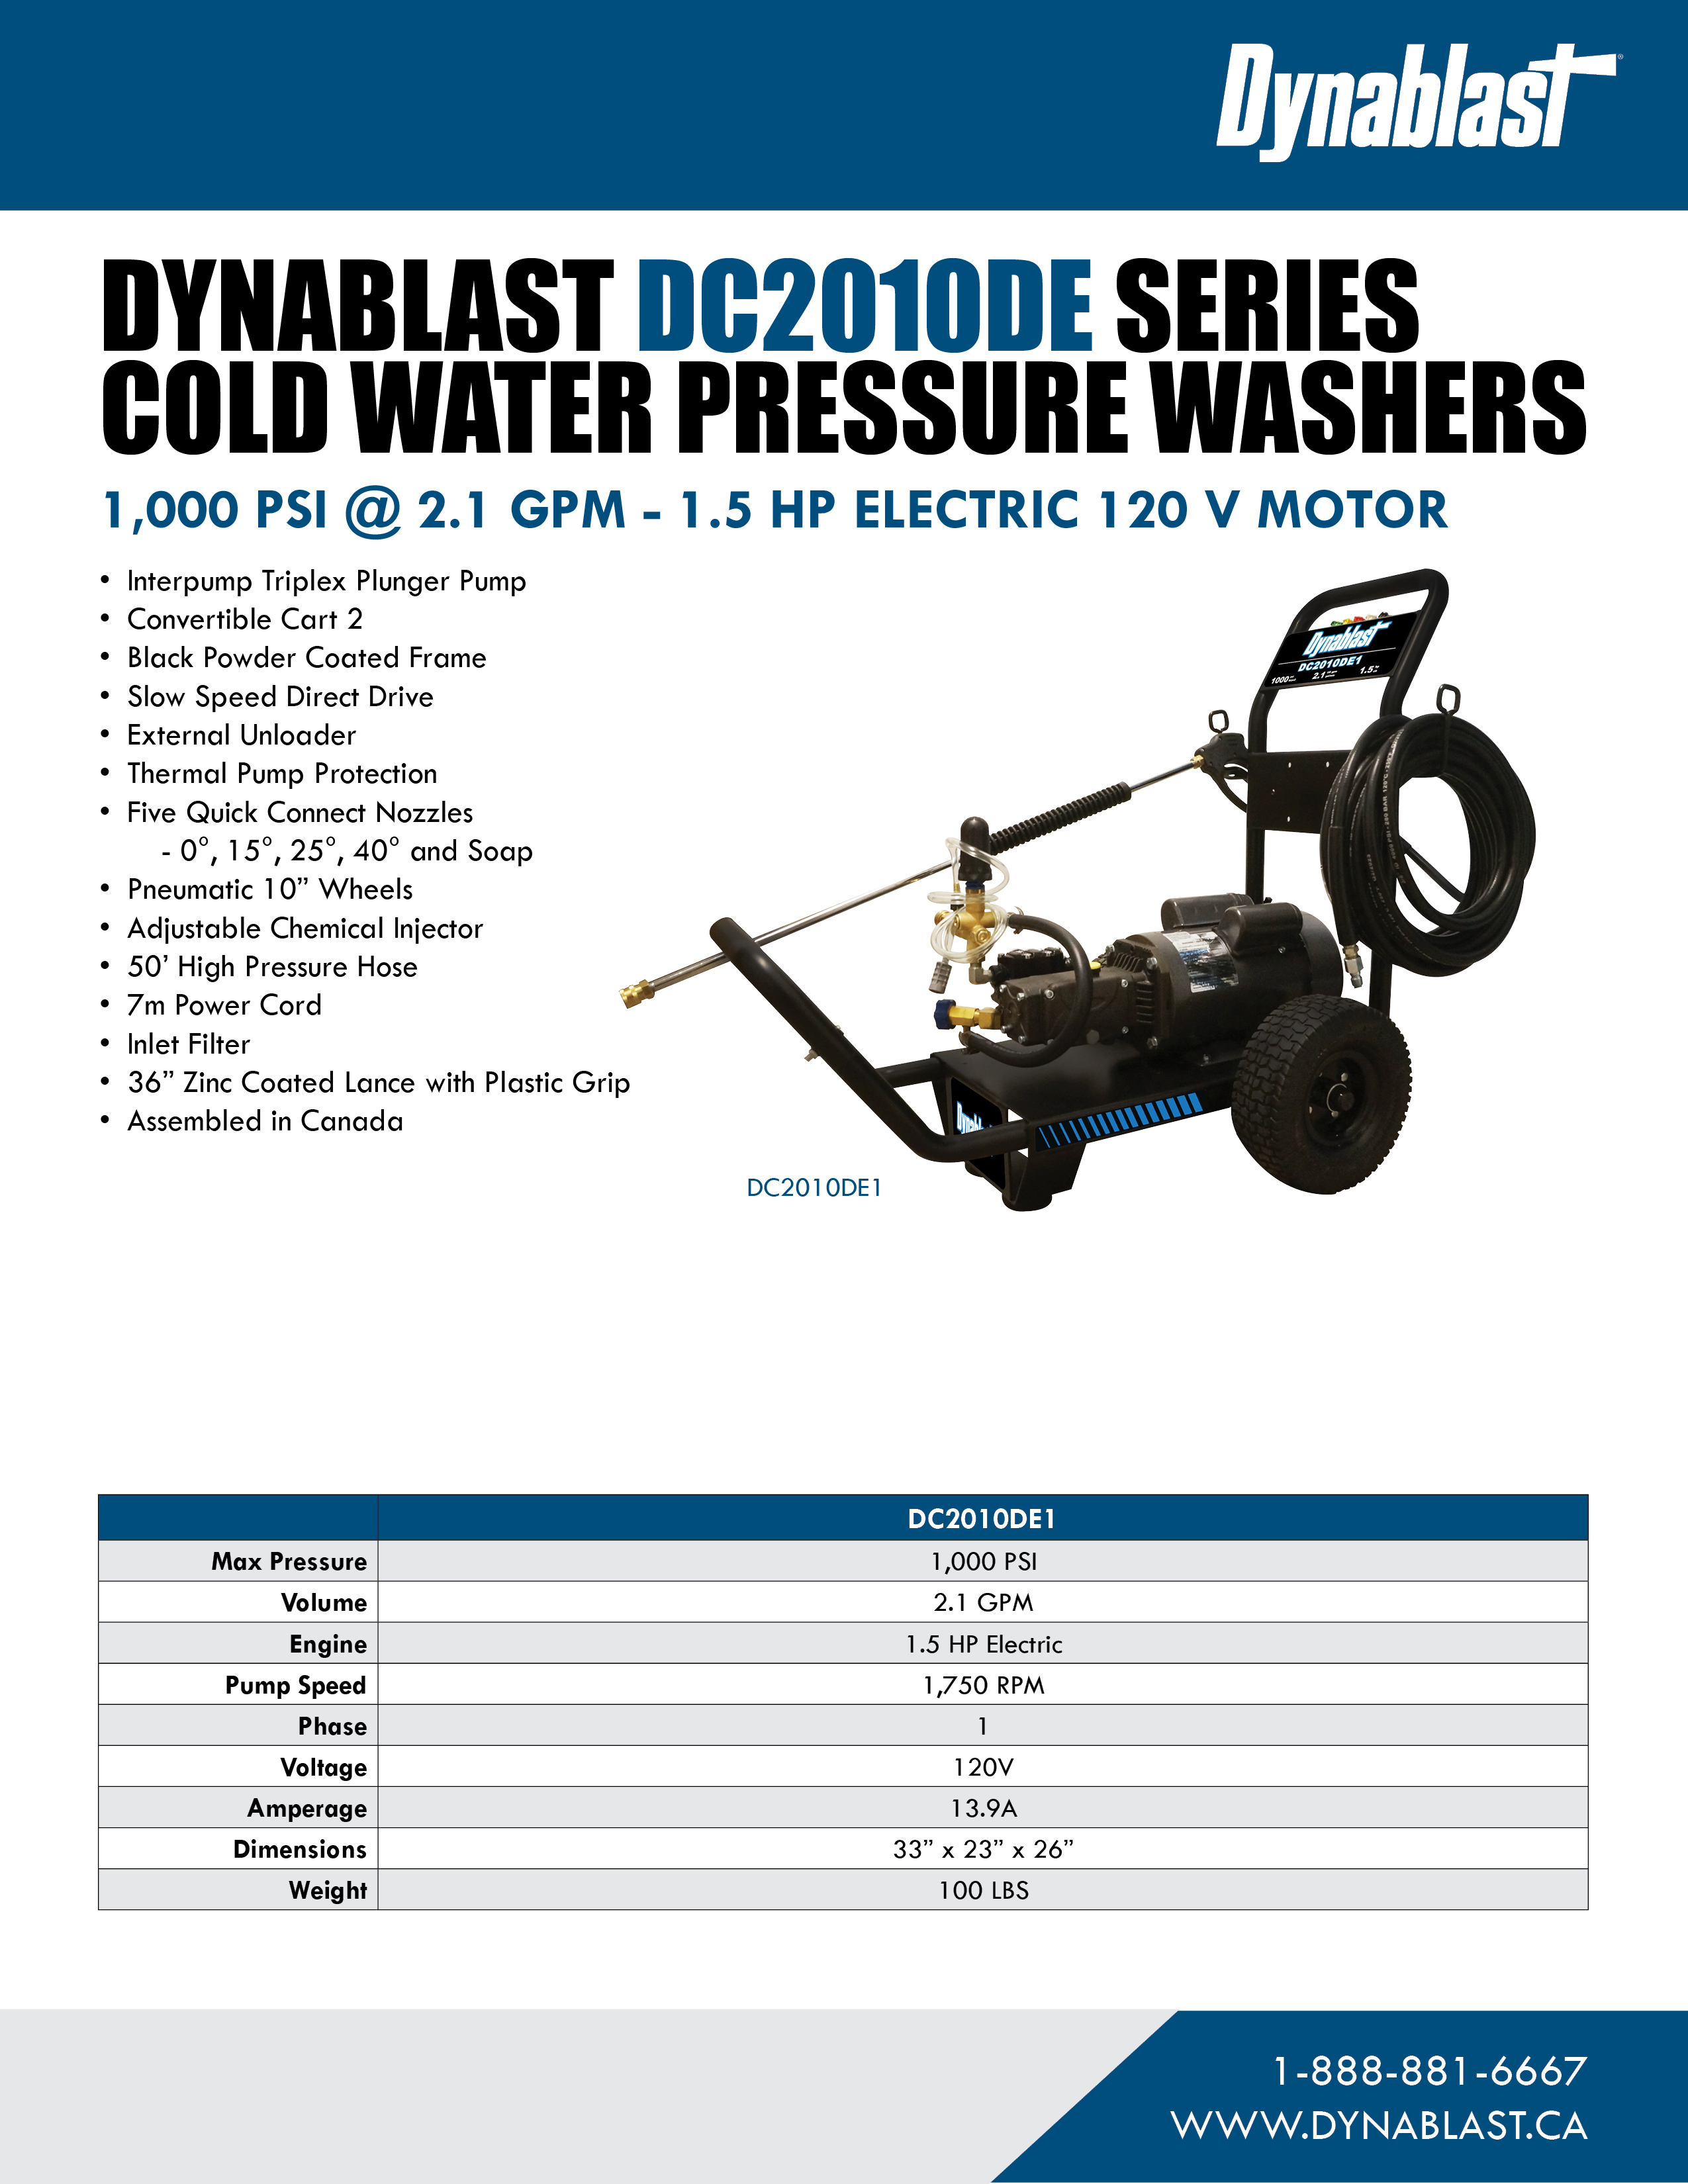 Spec Sheet - Dynablast DC2010DE1 Cold Water Pressure Washer